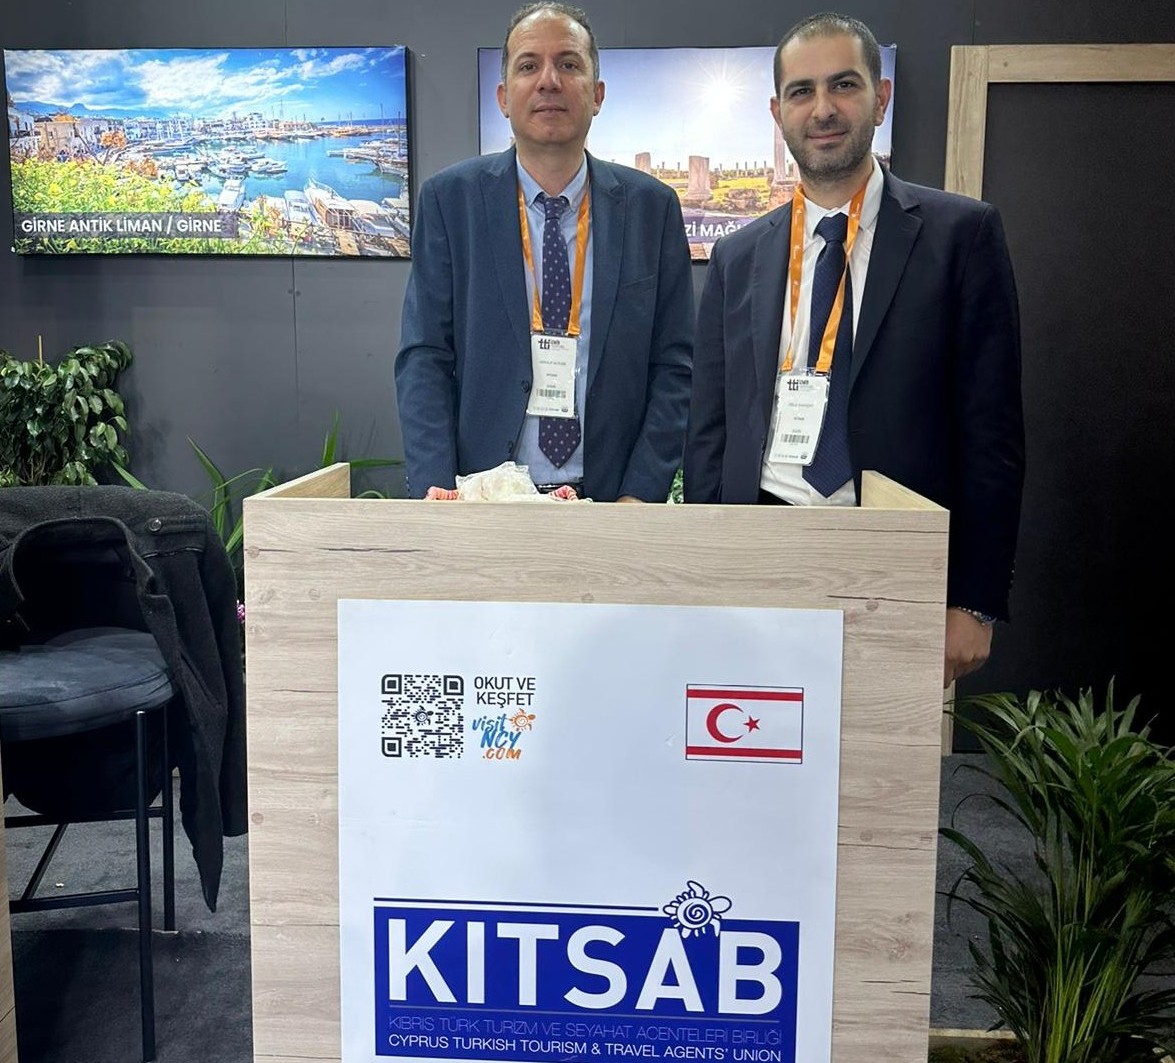 KITSAB Travel Turkey İzmir Fuarı’nda temsil ediliyor – BRTK